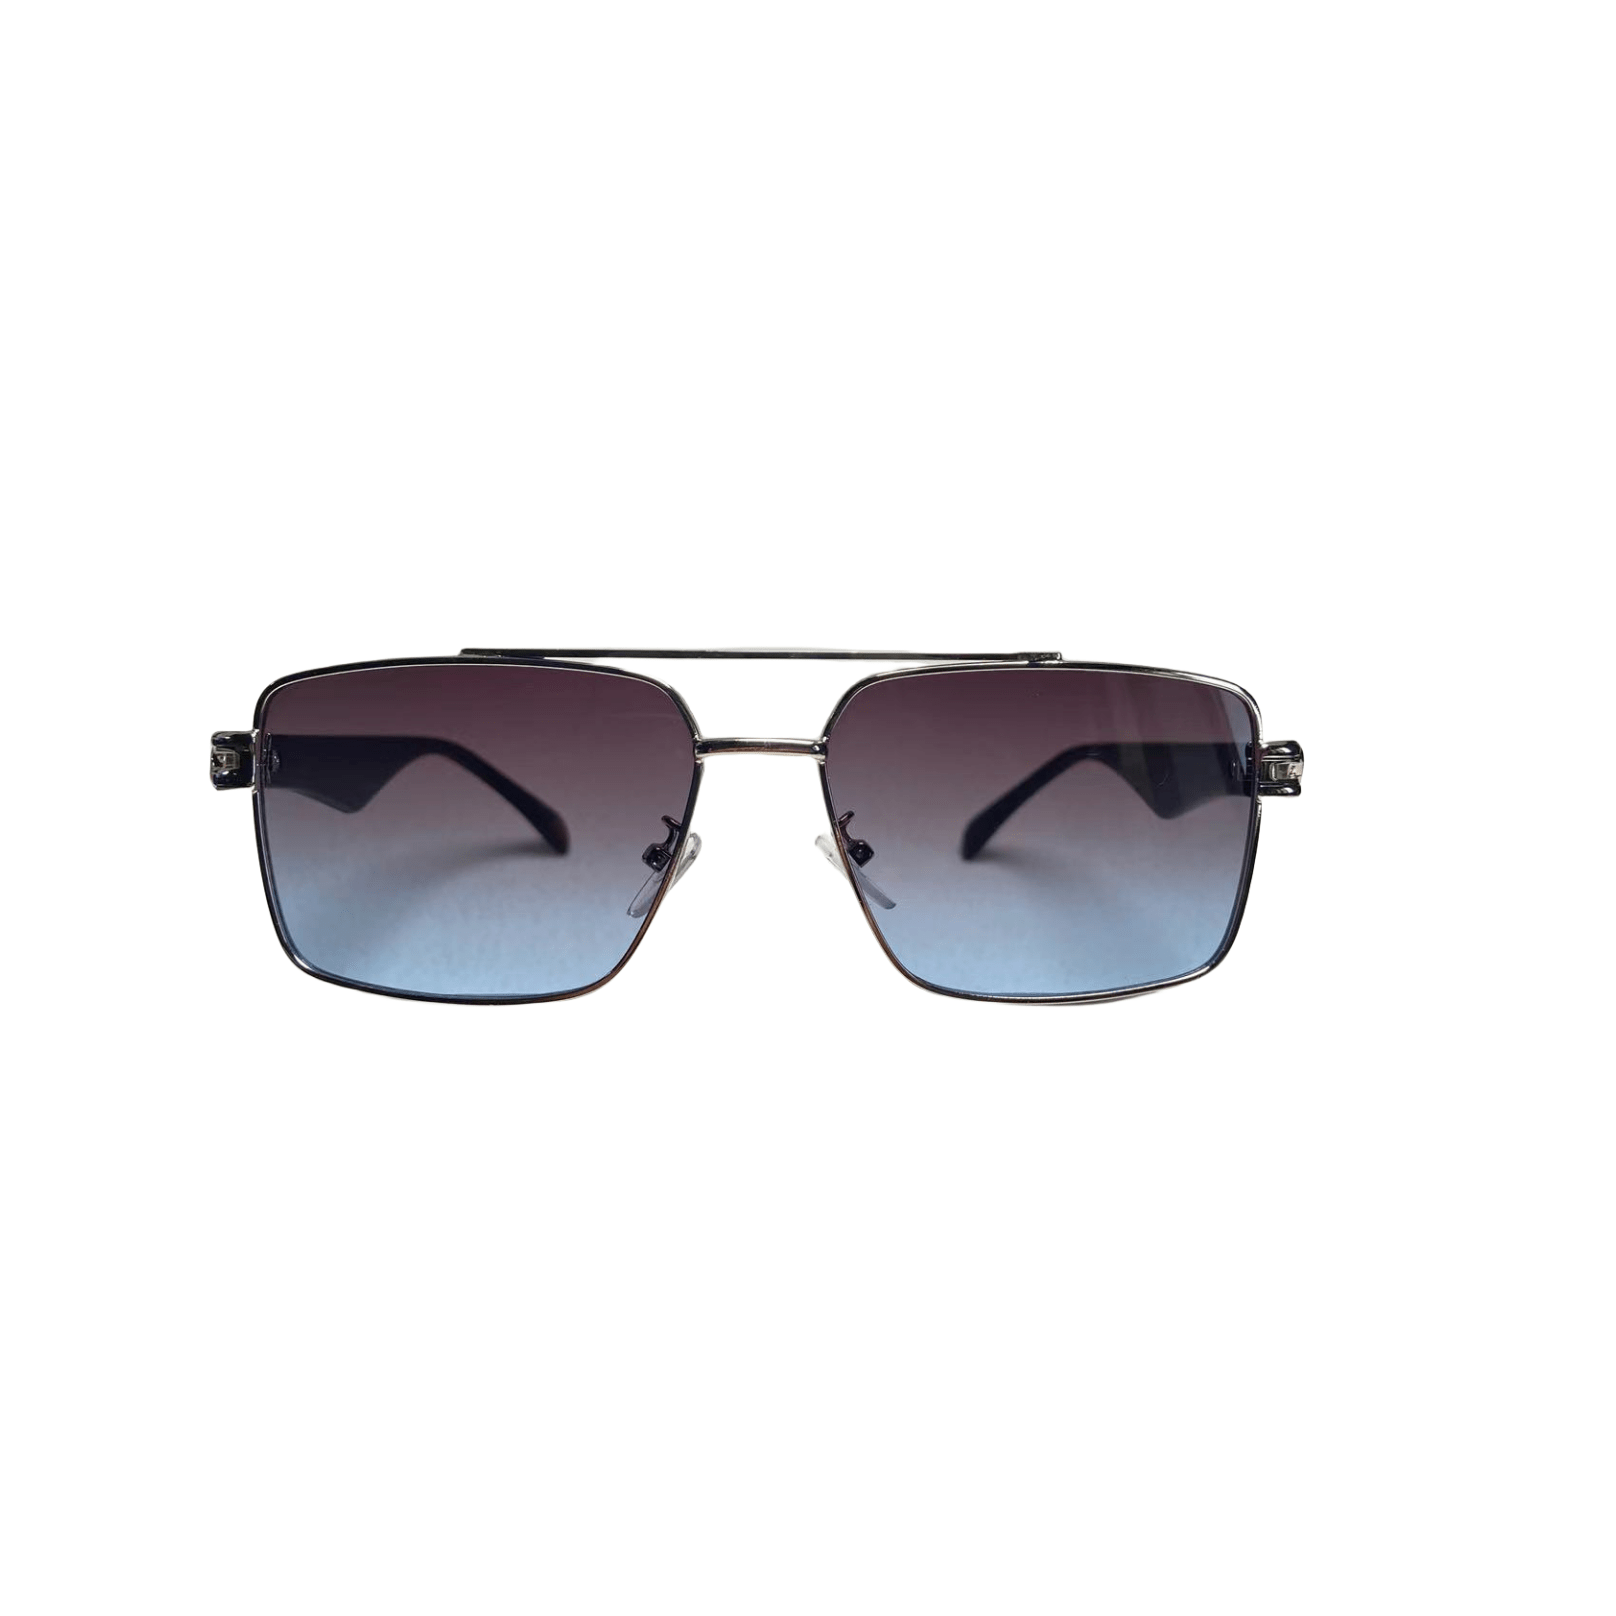 1pc Men's Classic Square Metal Sunglasses With Double Bridges